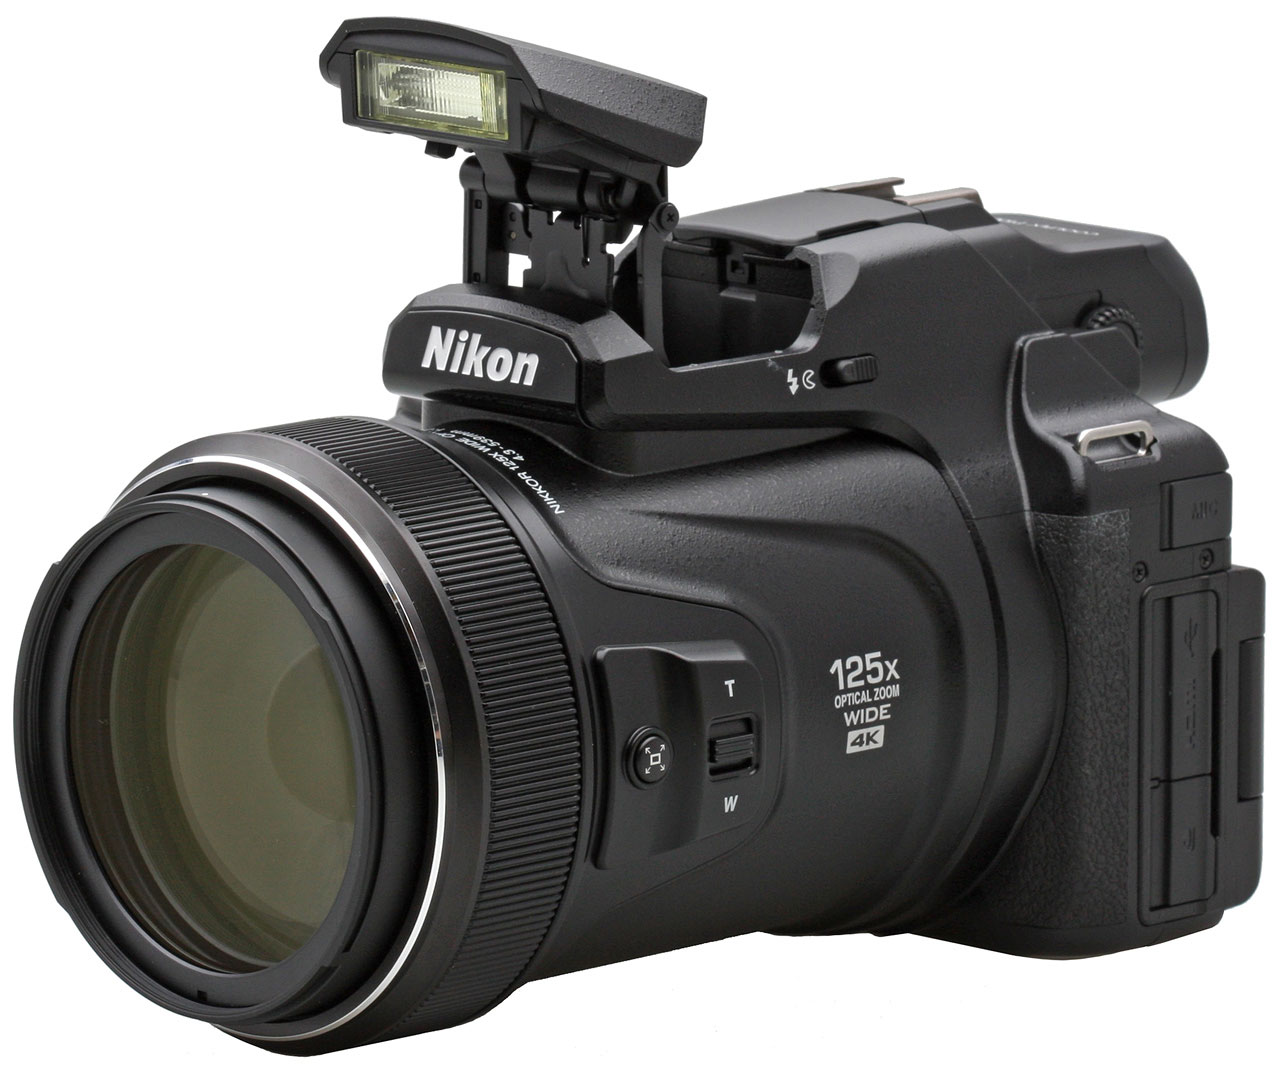 Nikon Coolpix P1000 review